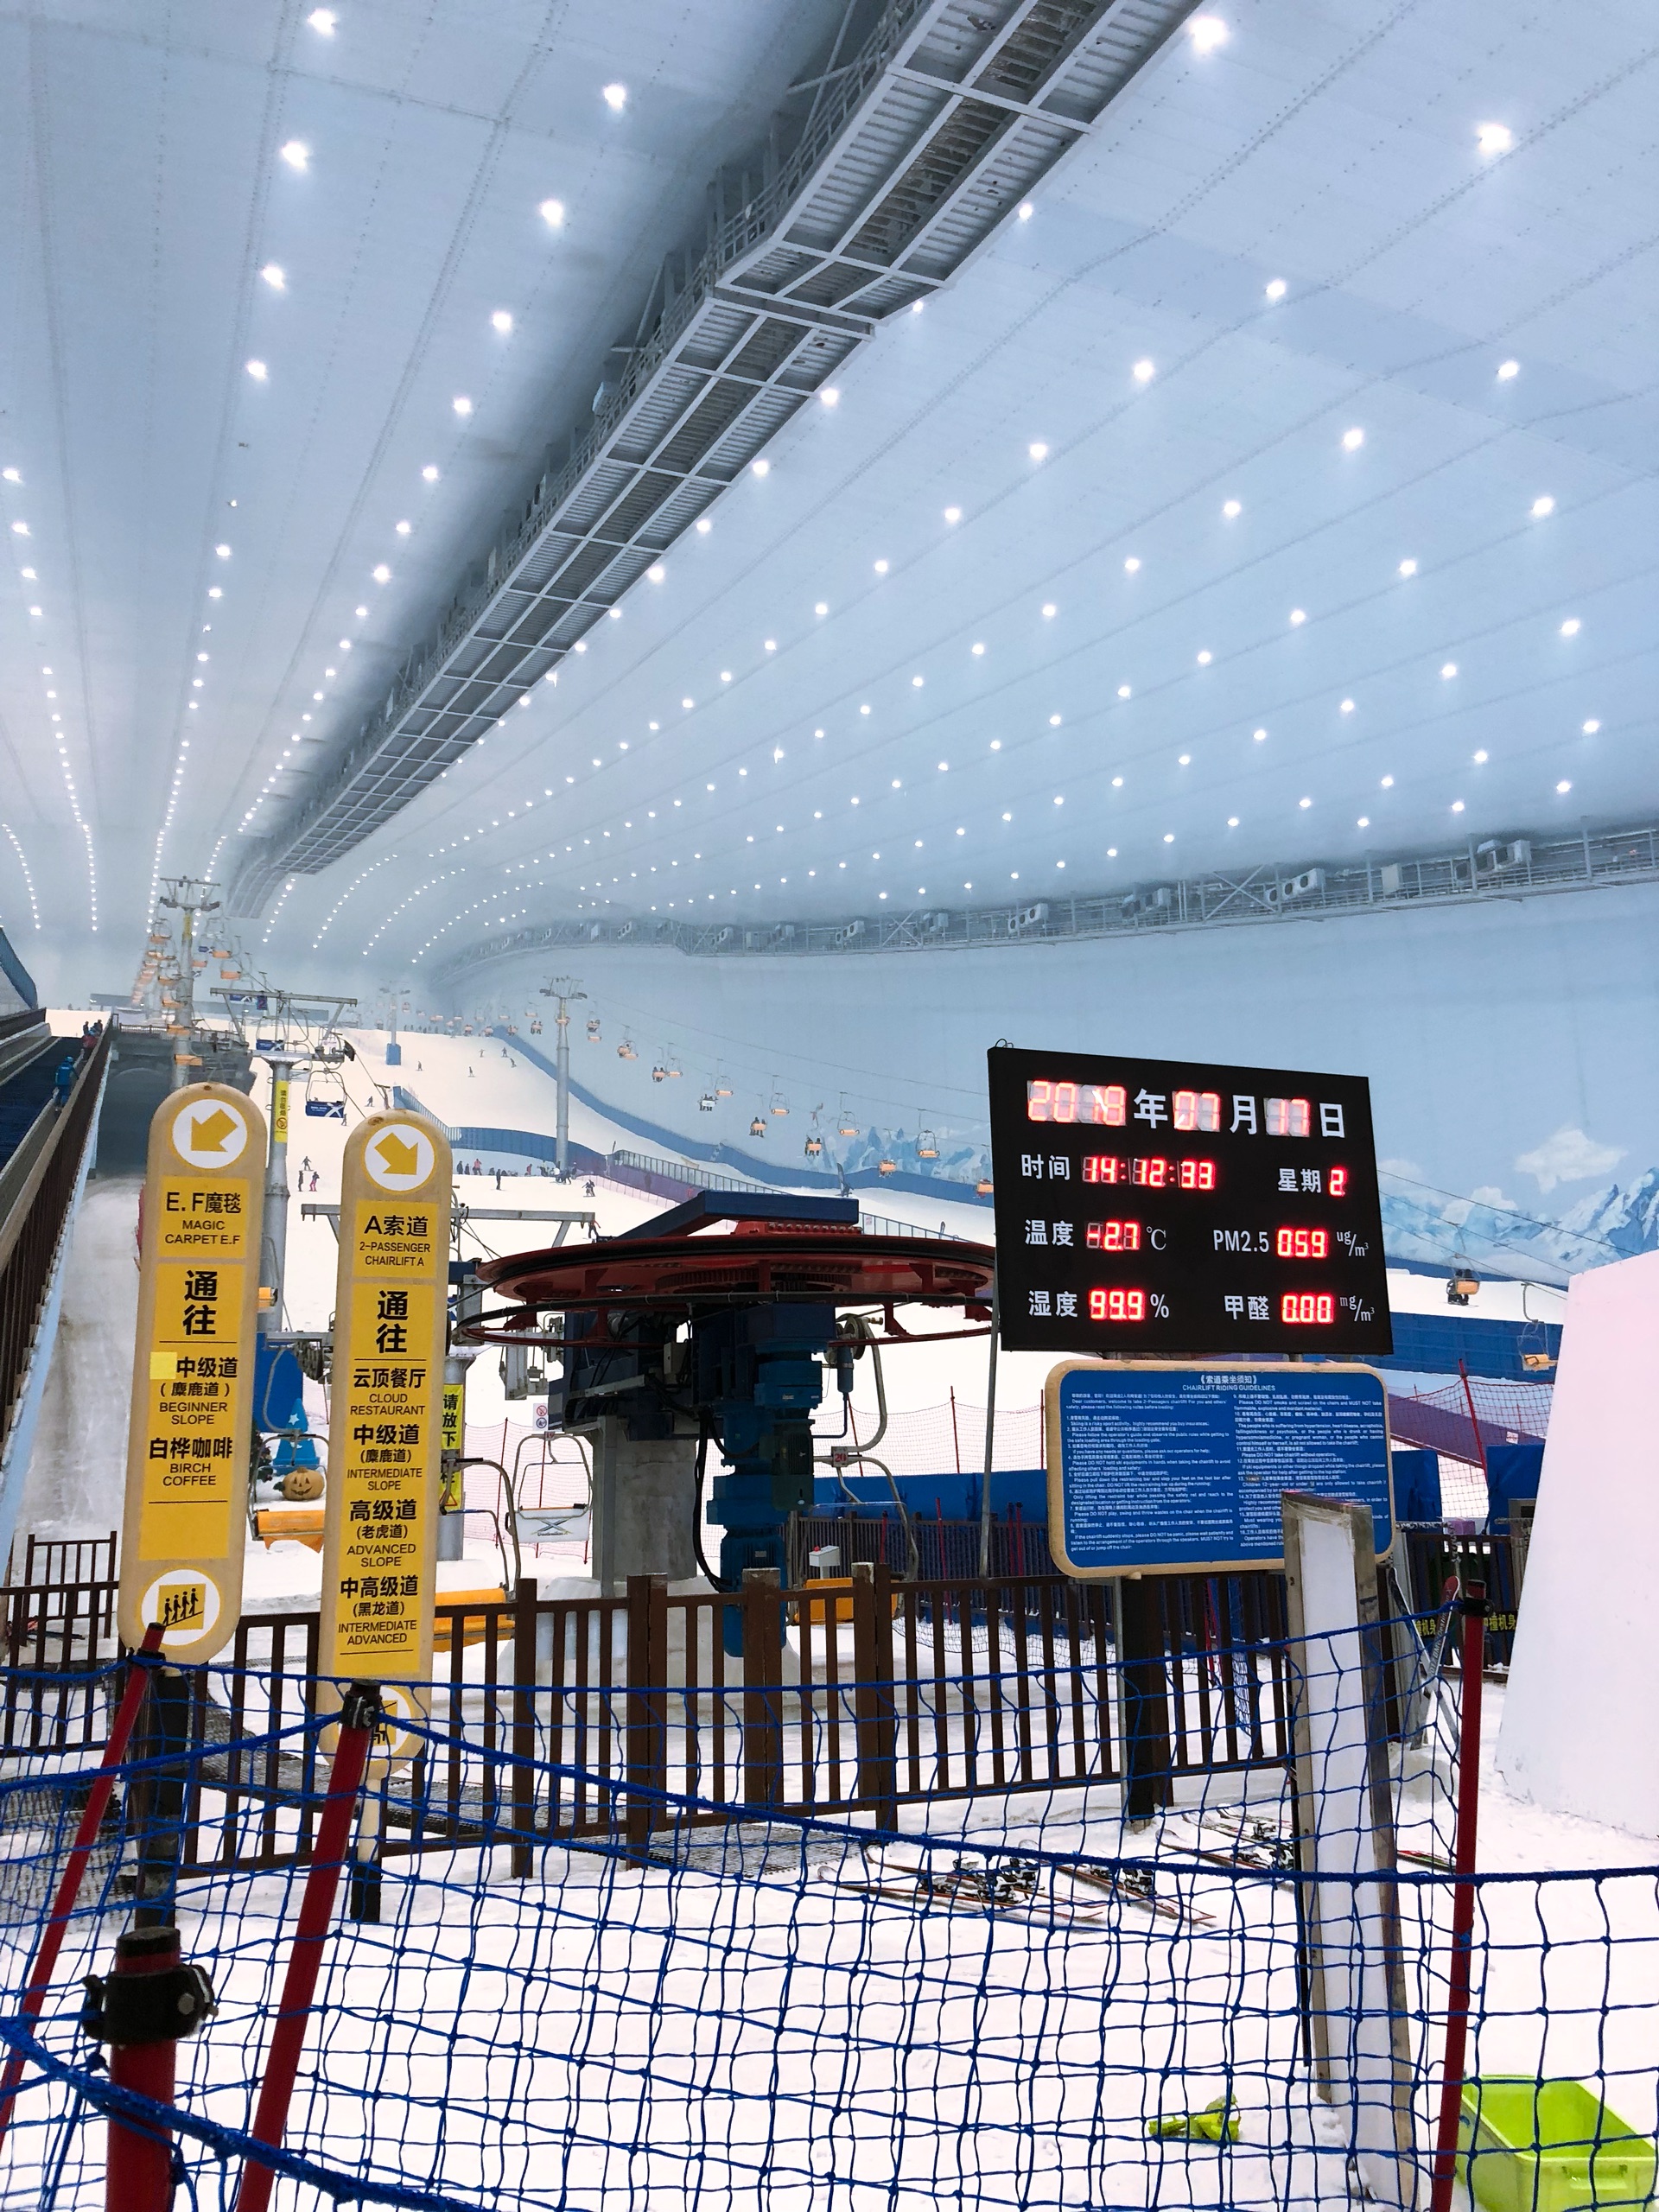 哈尔滨万达城室内滑雪,游乐园景观房,可以免费